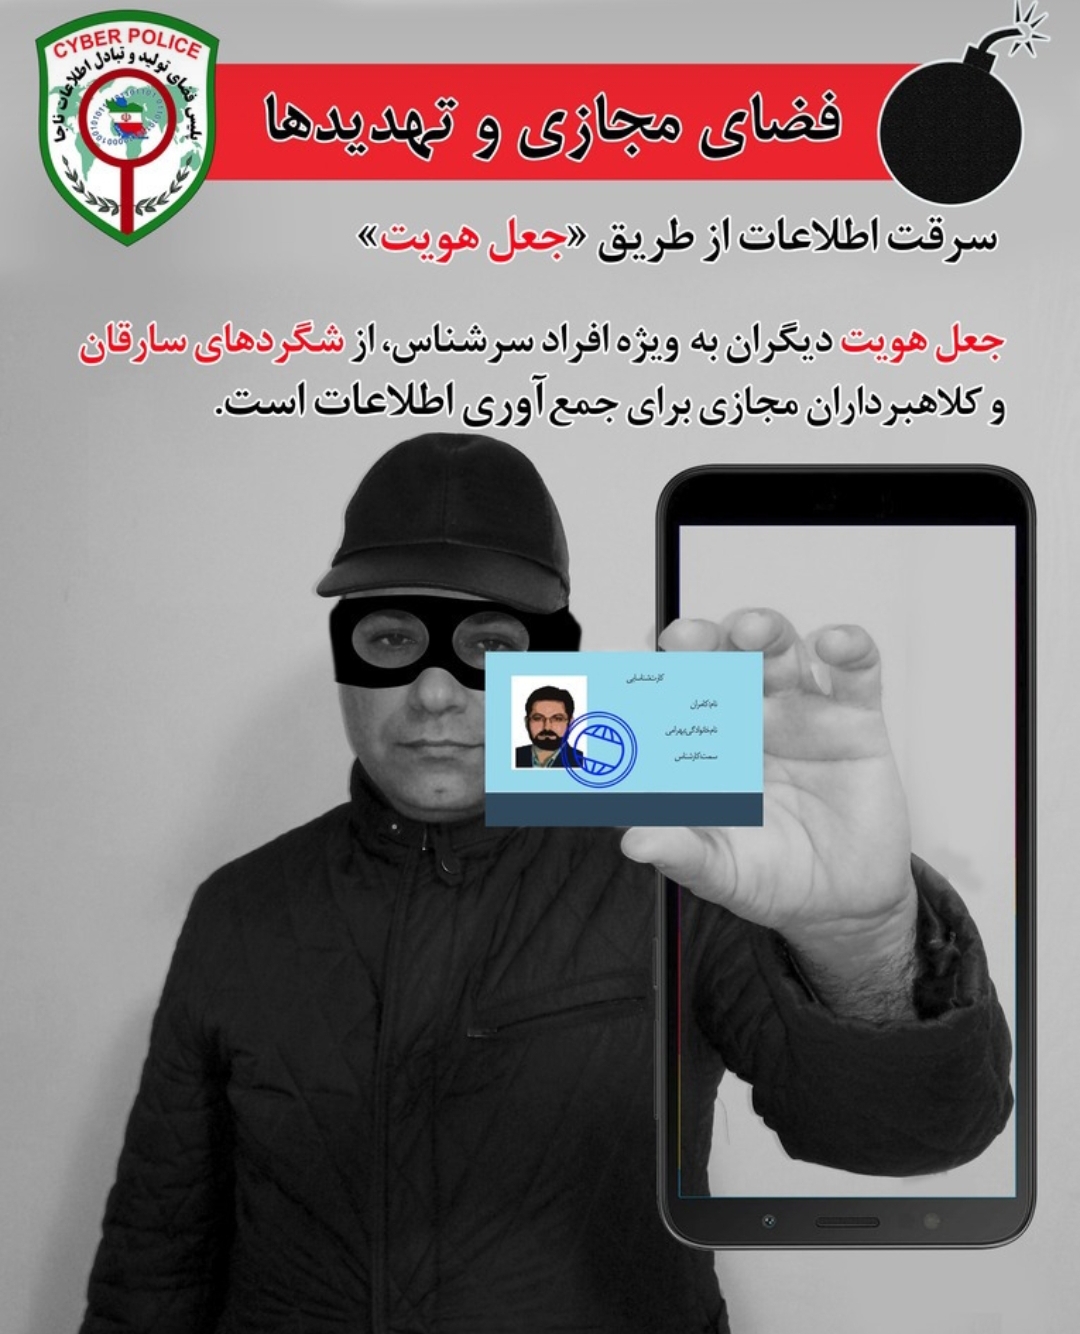 هشدار: سرقت اطلاعات از طریق جعل هویت